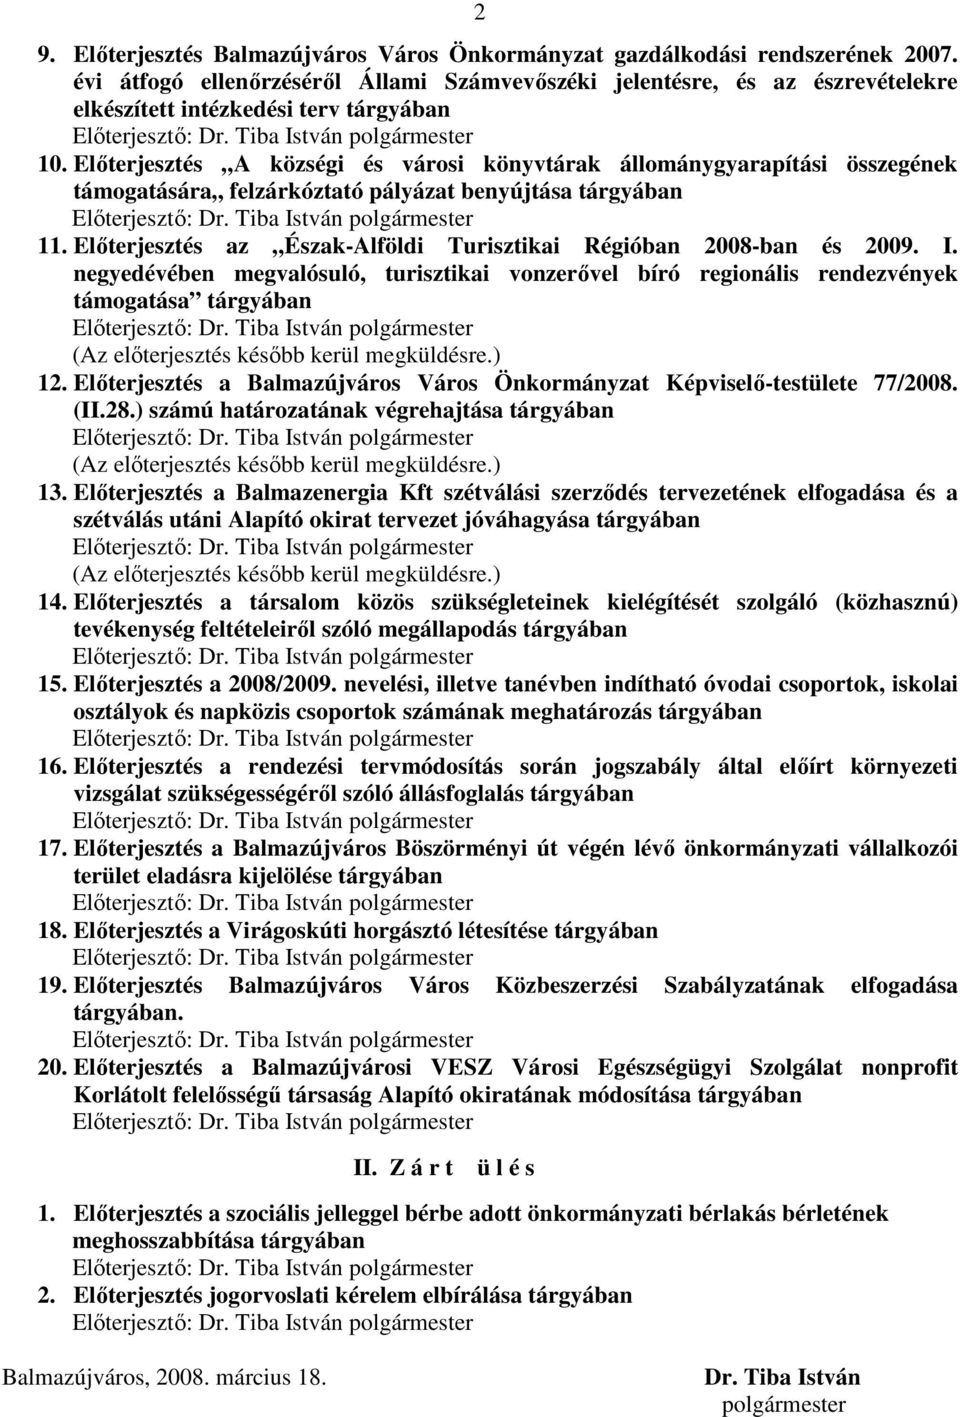 Elıterjesztés A községi és városi könyvtárak állománygyarapítási összegének támogatására felzárkóztató pályázat benyújtása tárgyában Elıterjesztı: Dr. Tiba István polgármester 11.